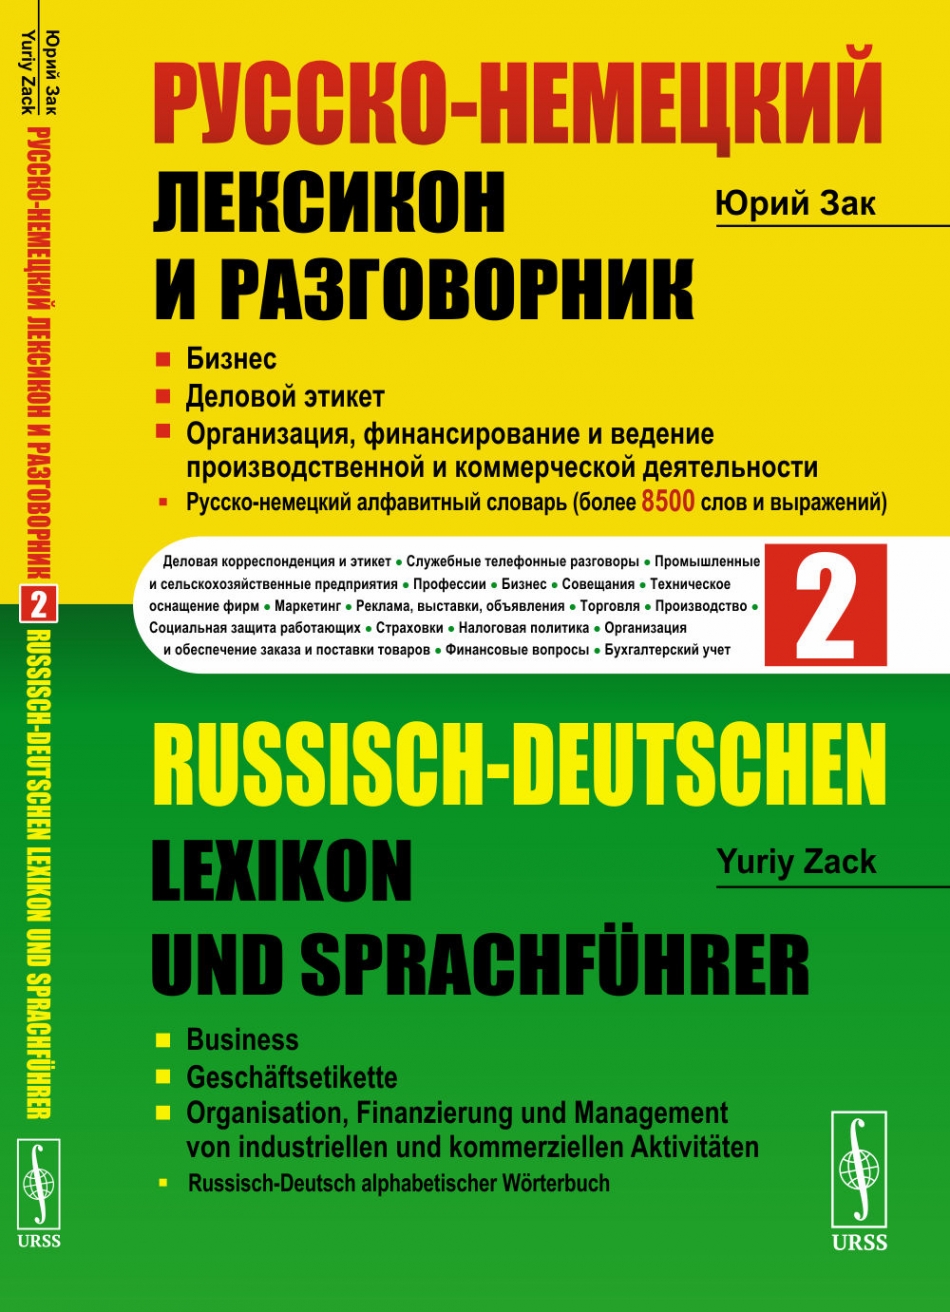  . -   .  2. .  . ,        / Russisch-Deutschen Lexikon und Sprachfuhrer 